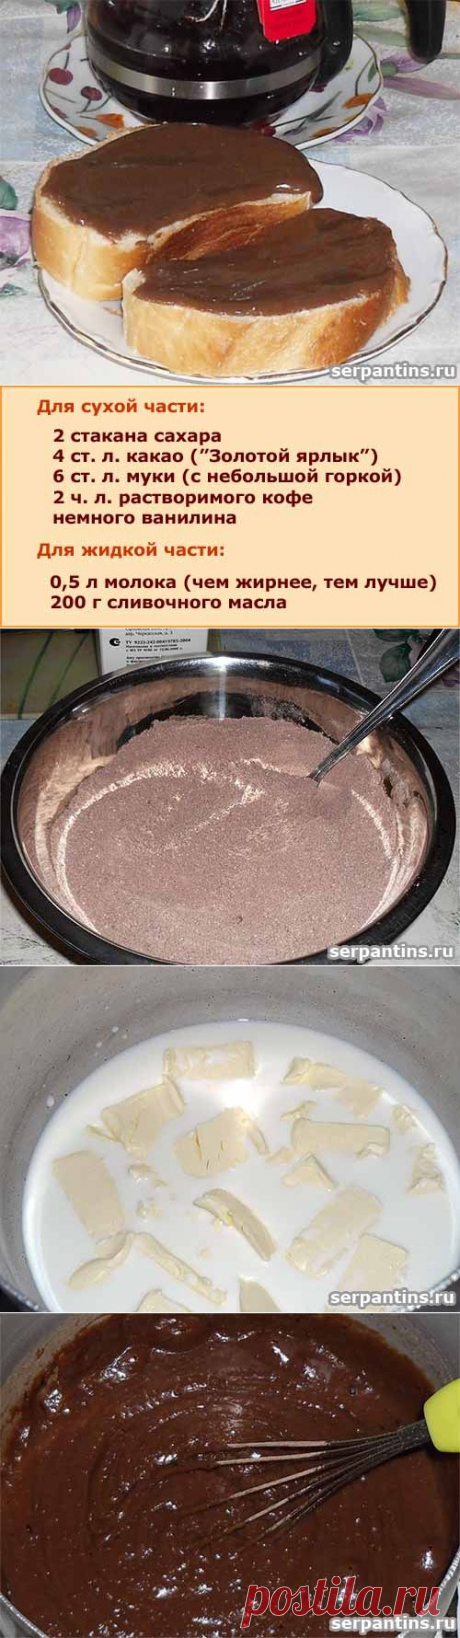 Шоколадная паста из какао - serpantins.ru